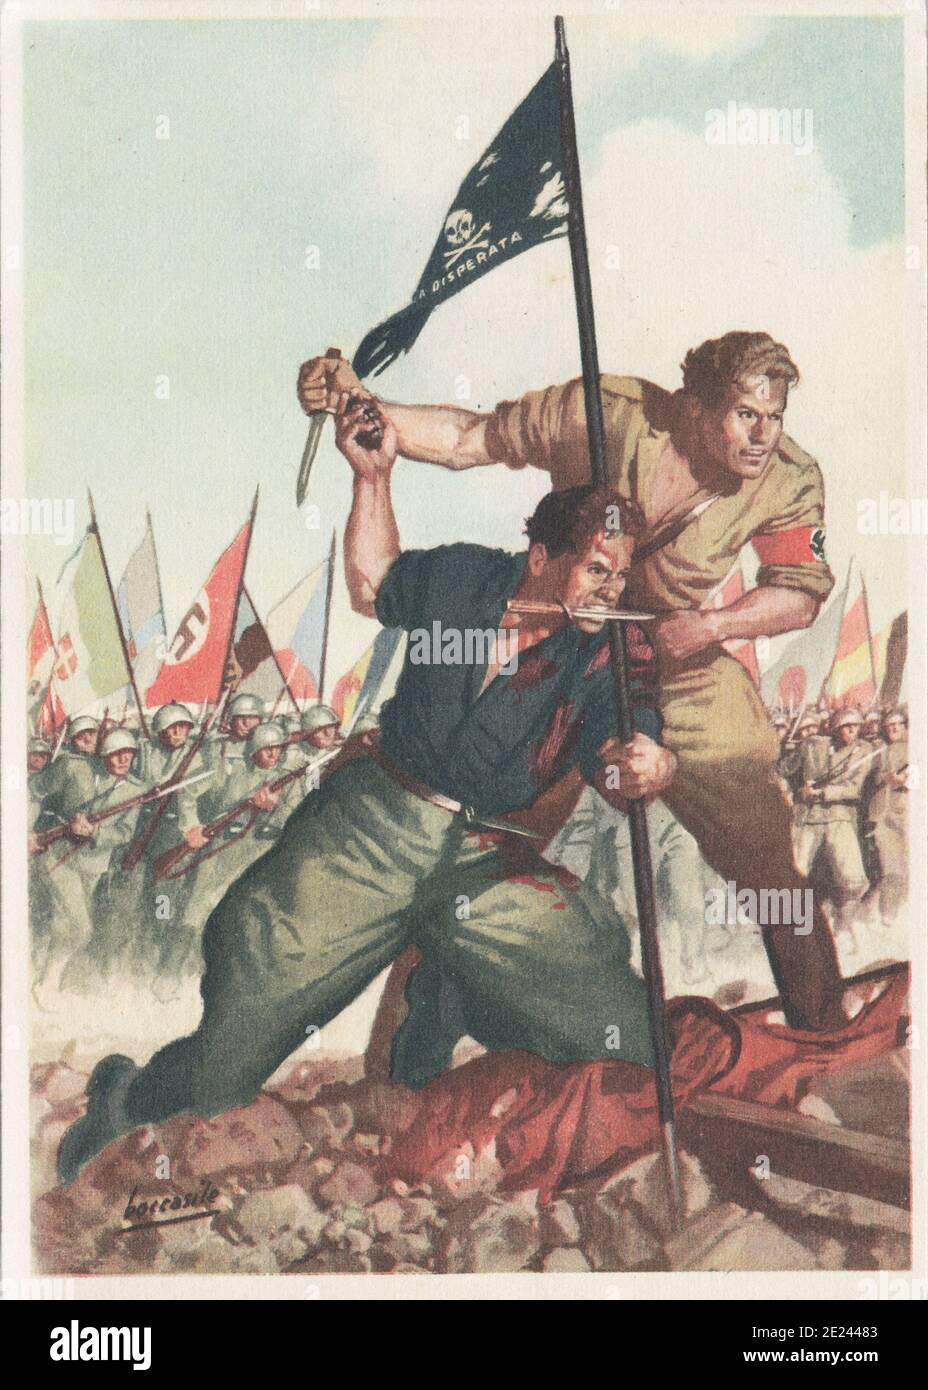 Cartolina italiana tedesco-italiana di armamento della Fratellanza. 1941 Foto Stock